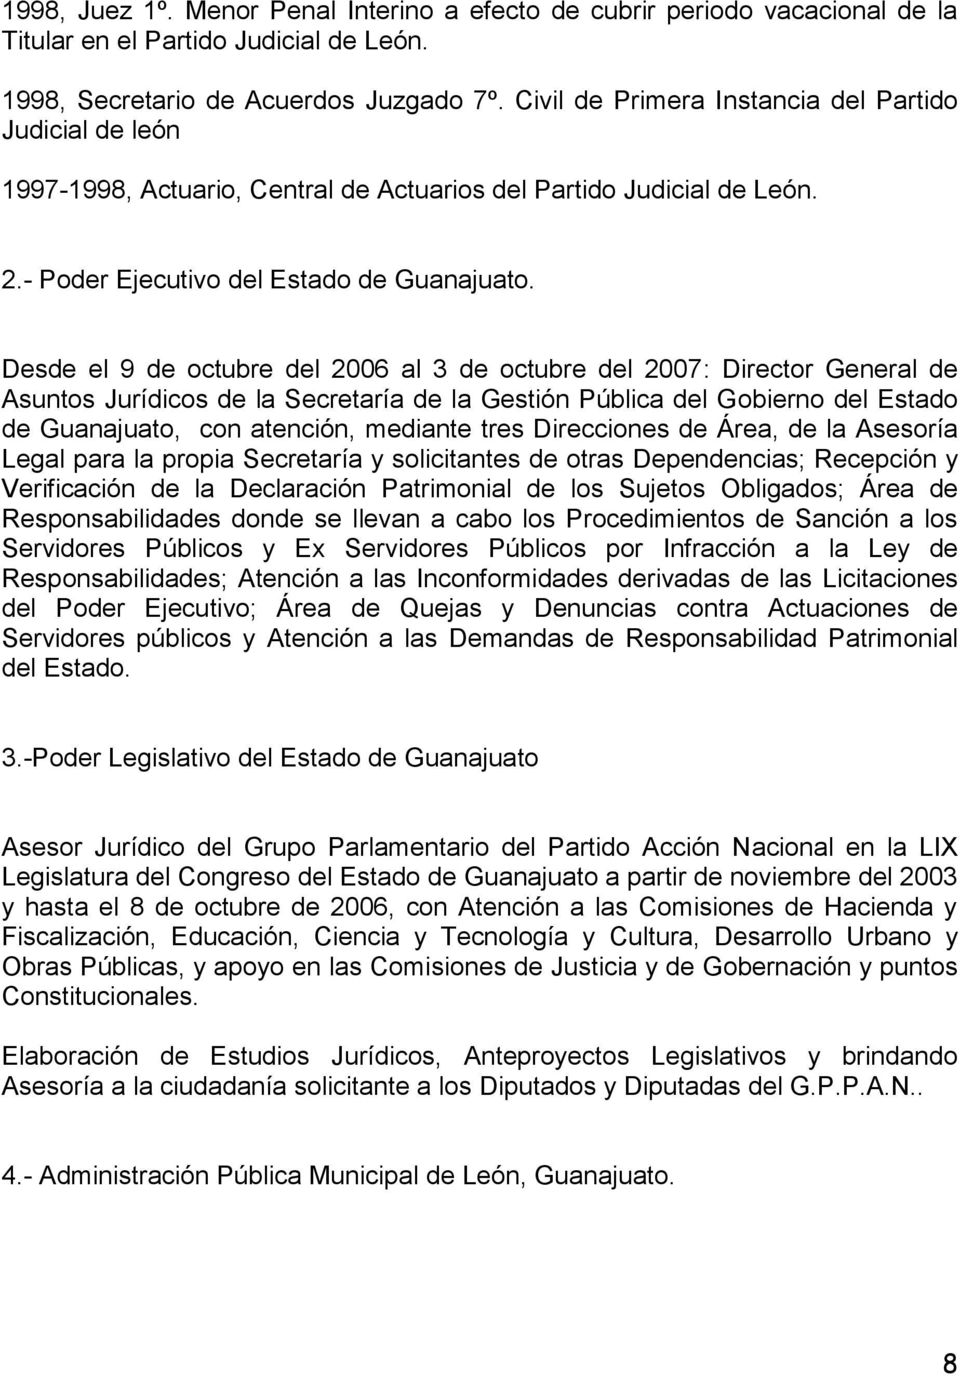 Desde el 9 de octubre del 2006 al 3 de octubre del 2007: Director General de Asuntos Jurídicos de la Secretaría de la Gestión Pública del Gobierno del Estado de Guanajuato, con atención, mediante